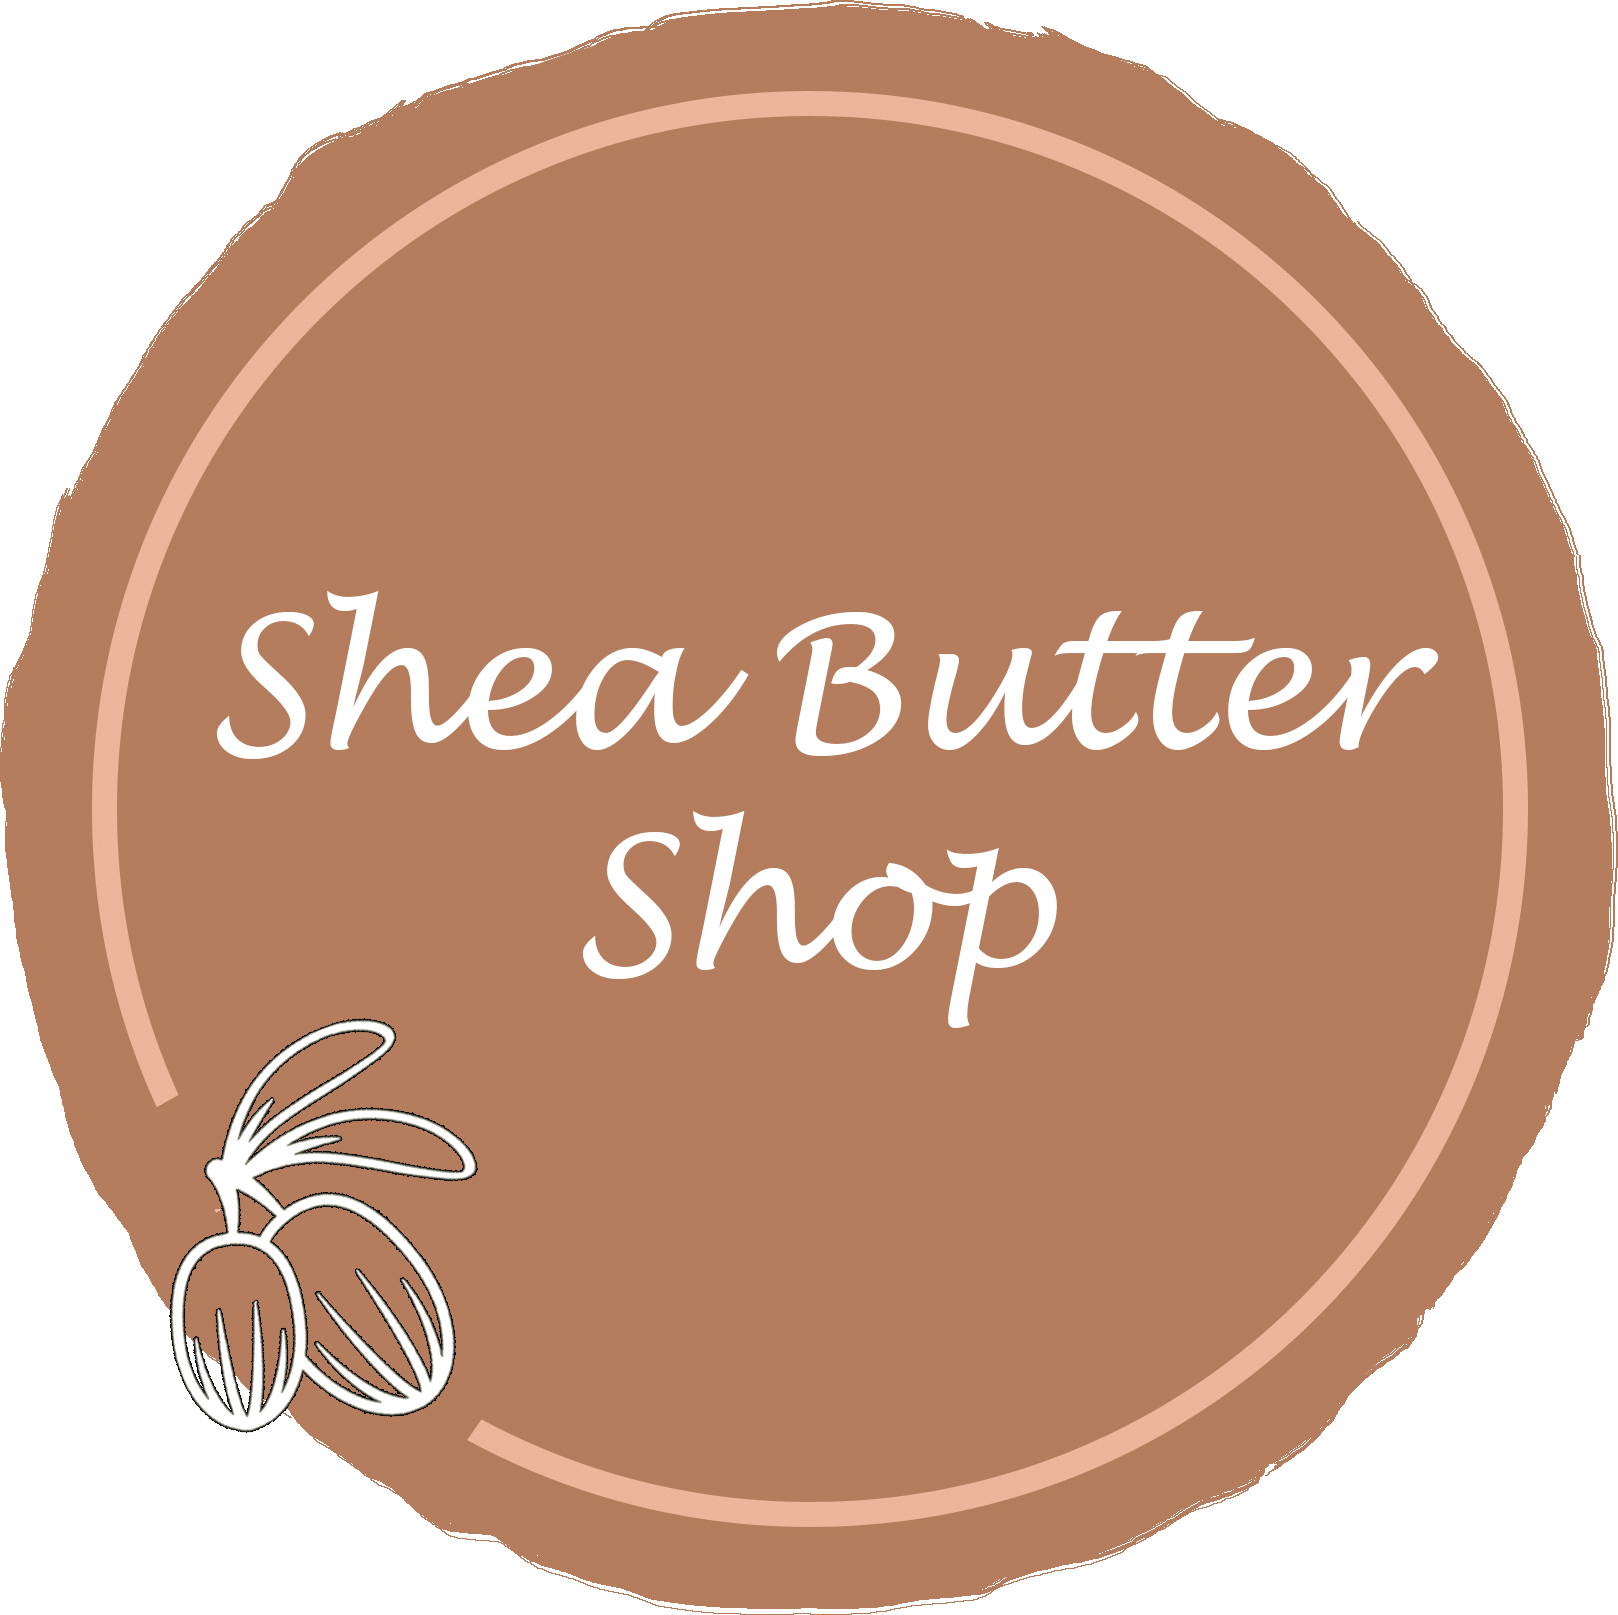 Shea Butter Shop Logo5